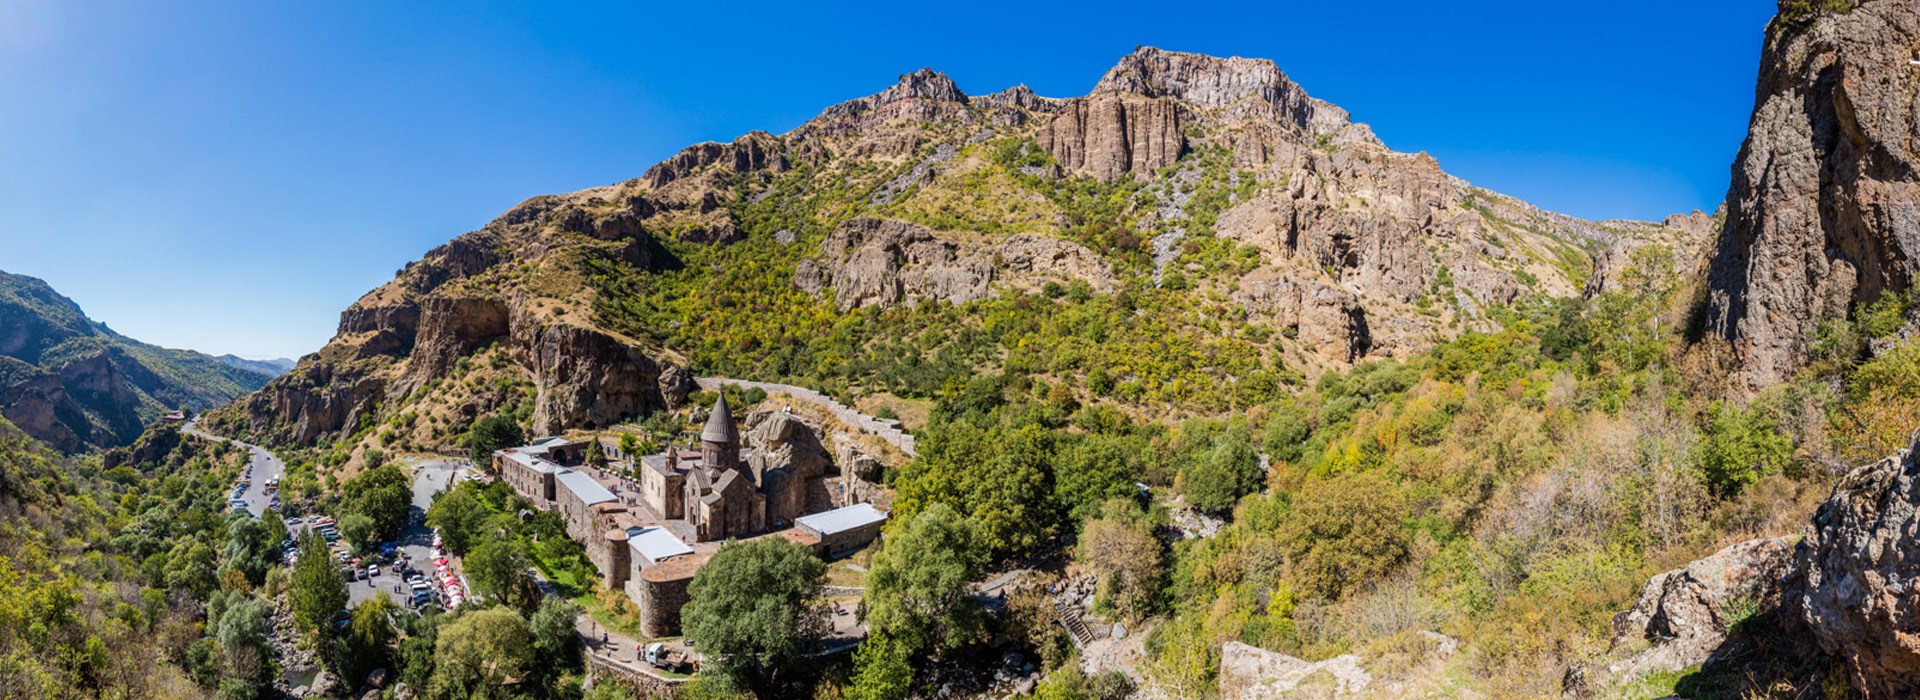 Visiter Le monastère de Geghard - Arménie